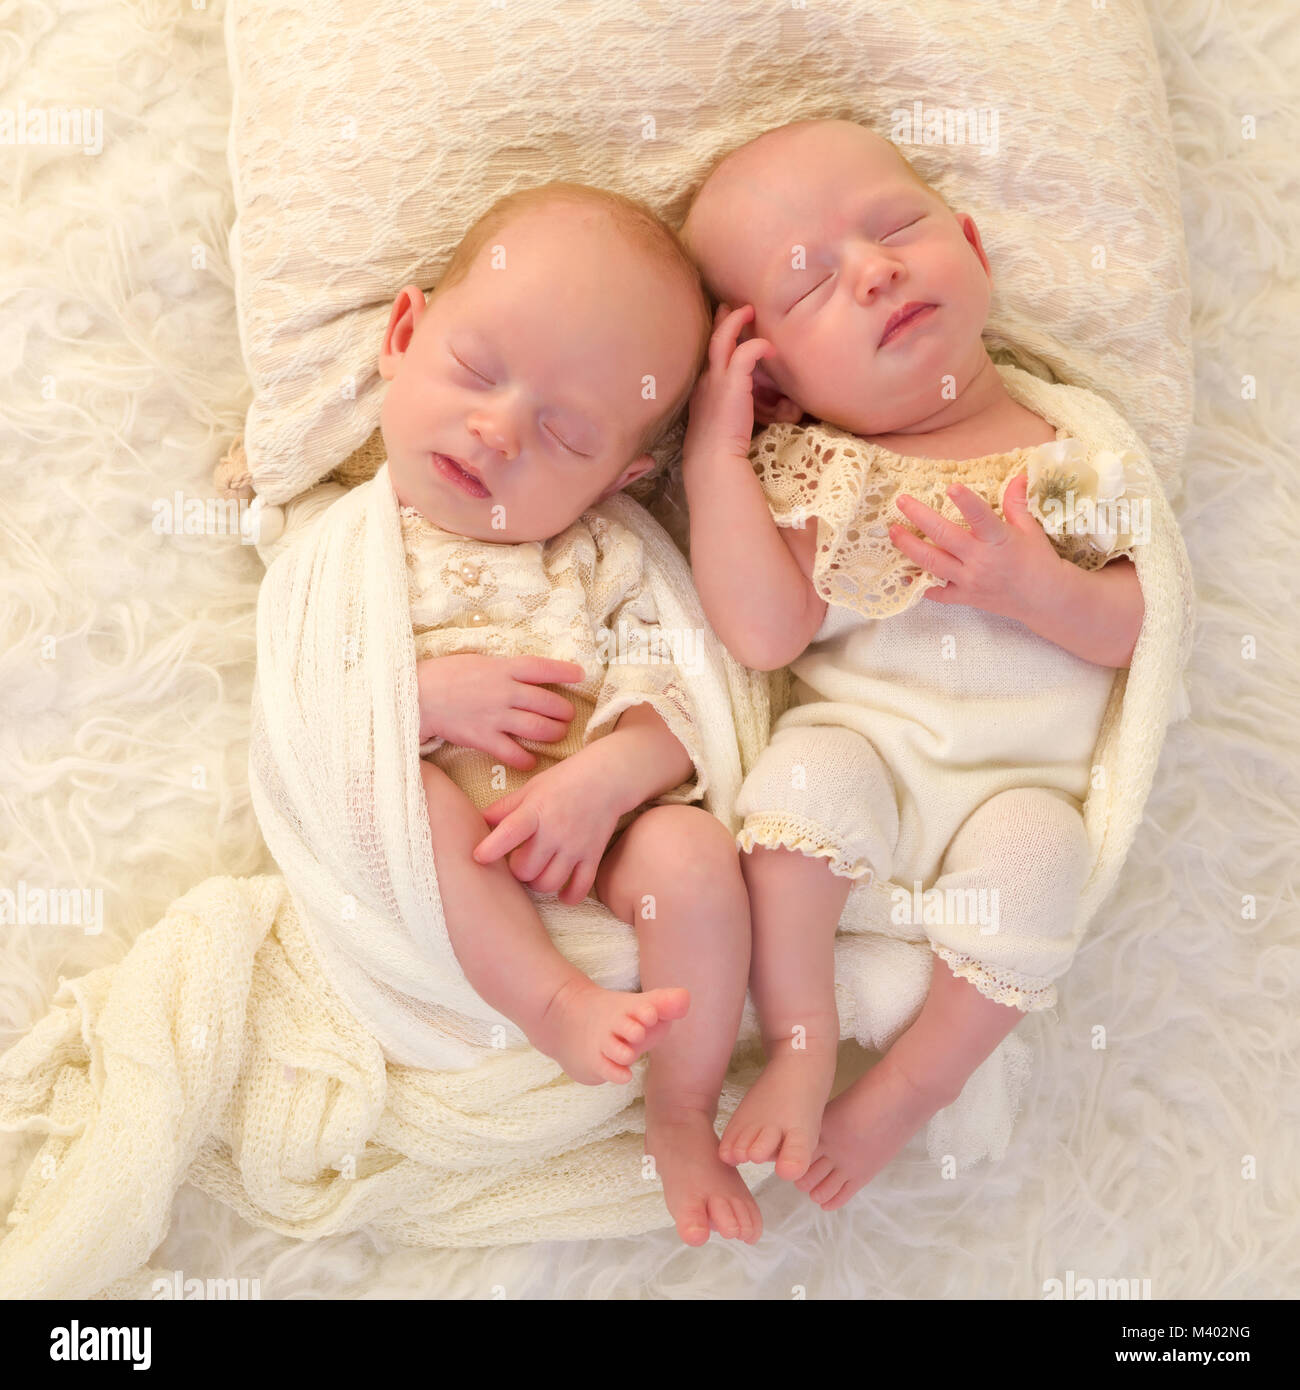 Drei Wochen alte Neugeborene eineiigen Zwillingen in Spitze gekleidet Stockfoto